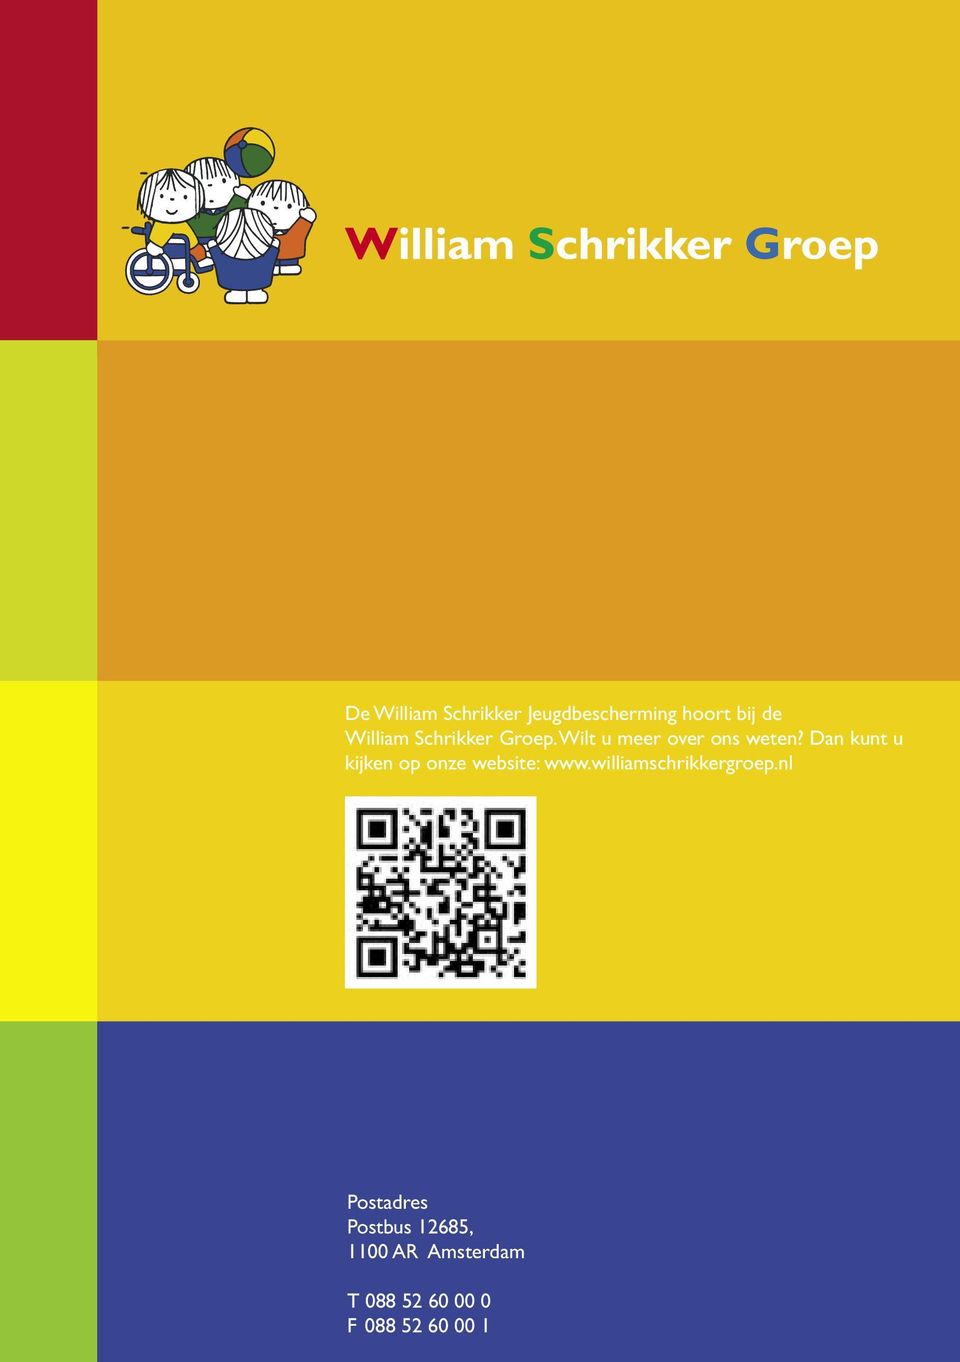 Dan kunt u kijken op onze website: www.williamschrikkergroep.